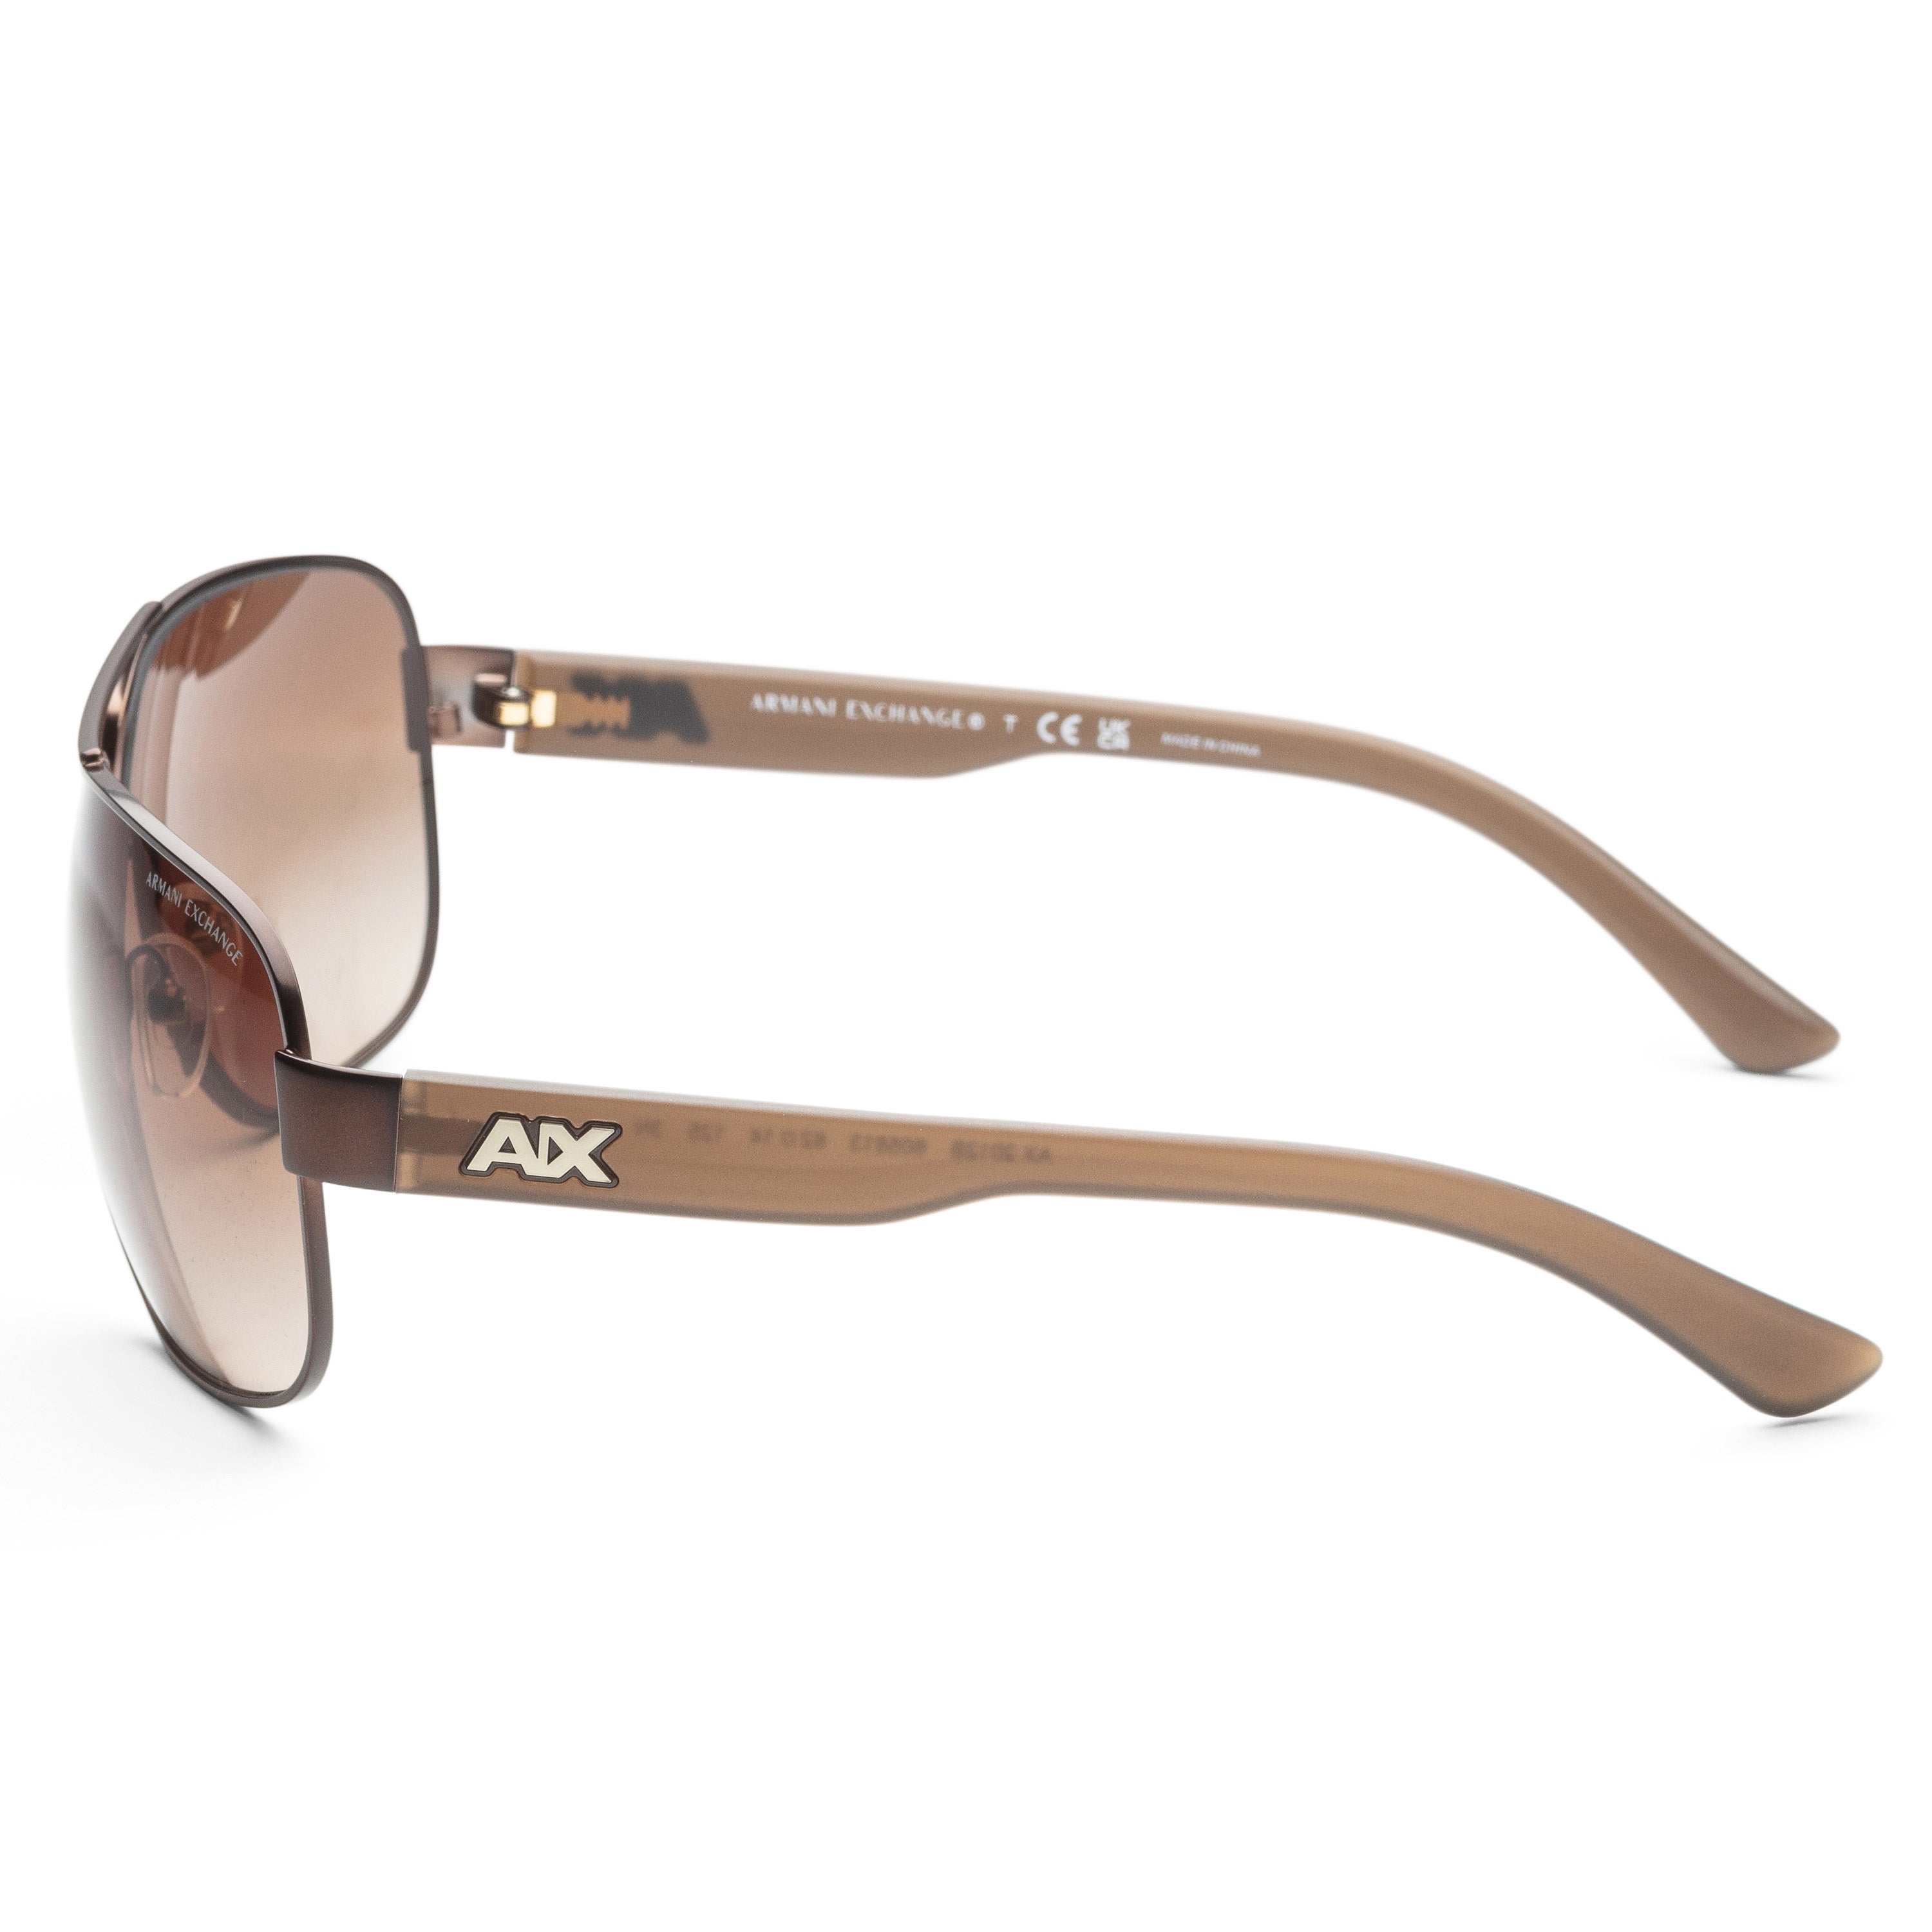 title:Armani Exchange Men's AX2012S-605813 Fashion 62mm Matte Brown Sunglasses;color:Matte Brown